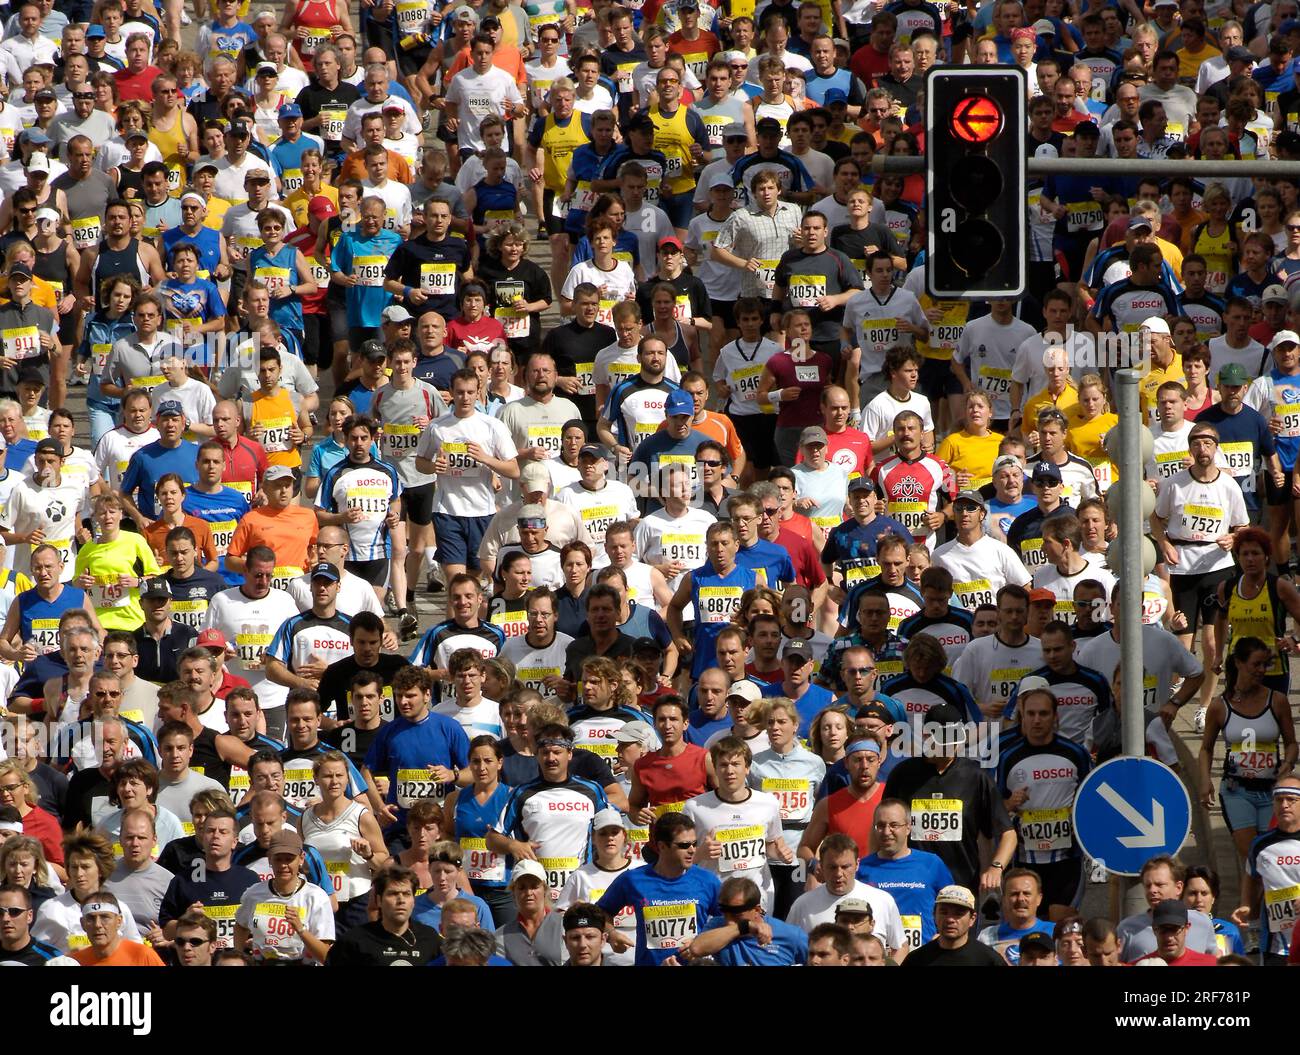 Marathon - Halbmarathon Stuttgart - Marathonläufer - Menschenmasse, Sport, Leichtathletik, Stock Photo